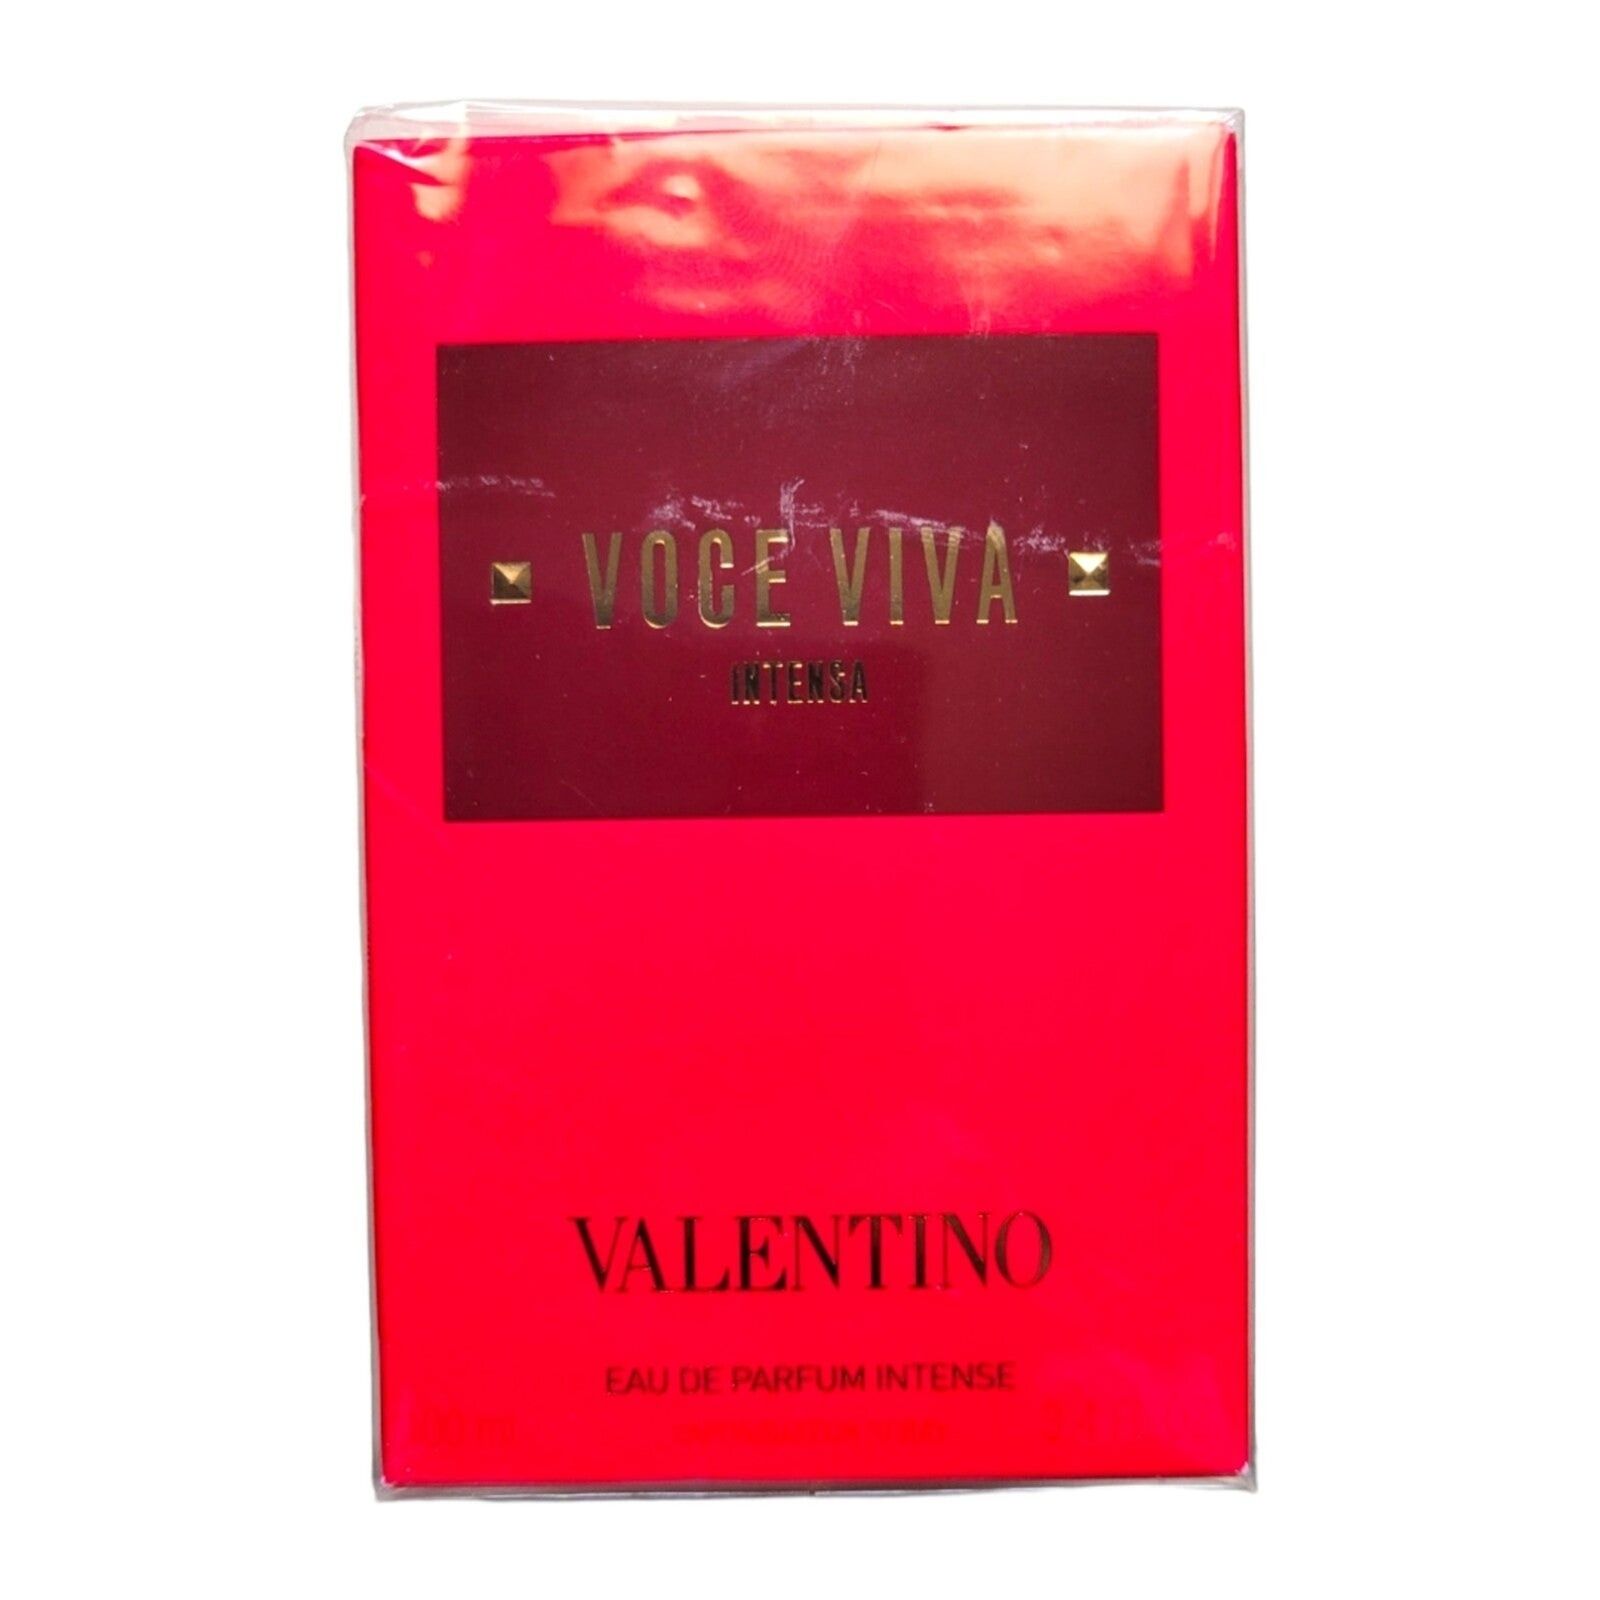 Valentino Voce Viva Intensa Eau de Parfum 3.4 fl oz